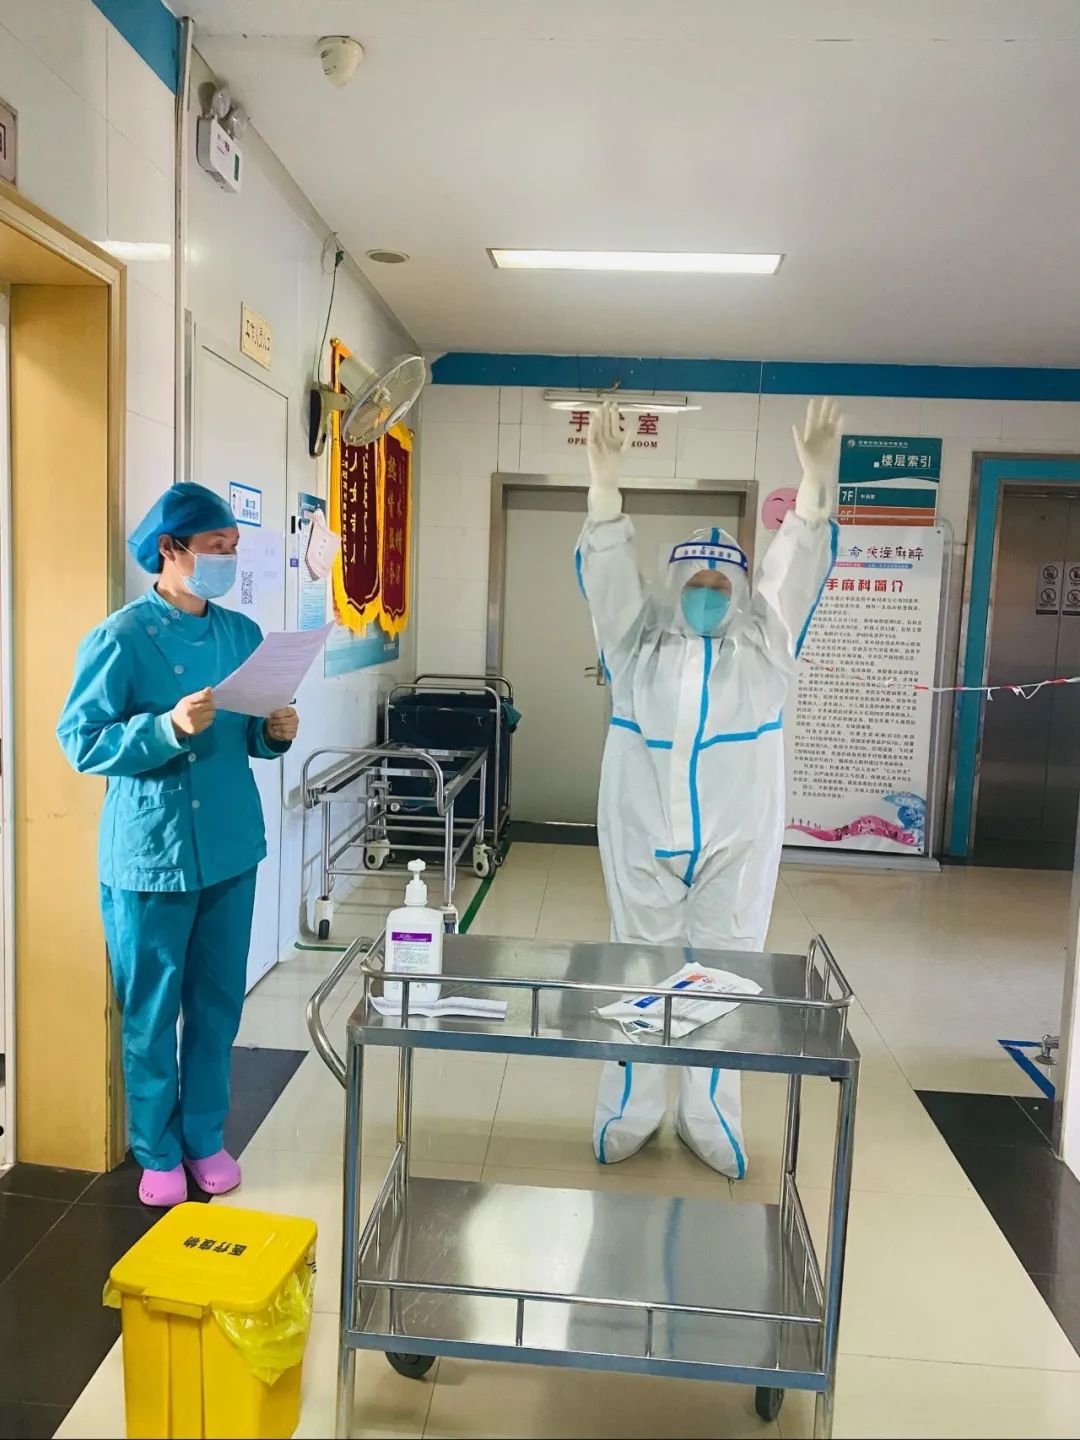 临渭区中医医院消毒供应室开展新冠肺炎病人复用器械处置演练